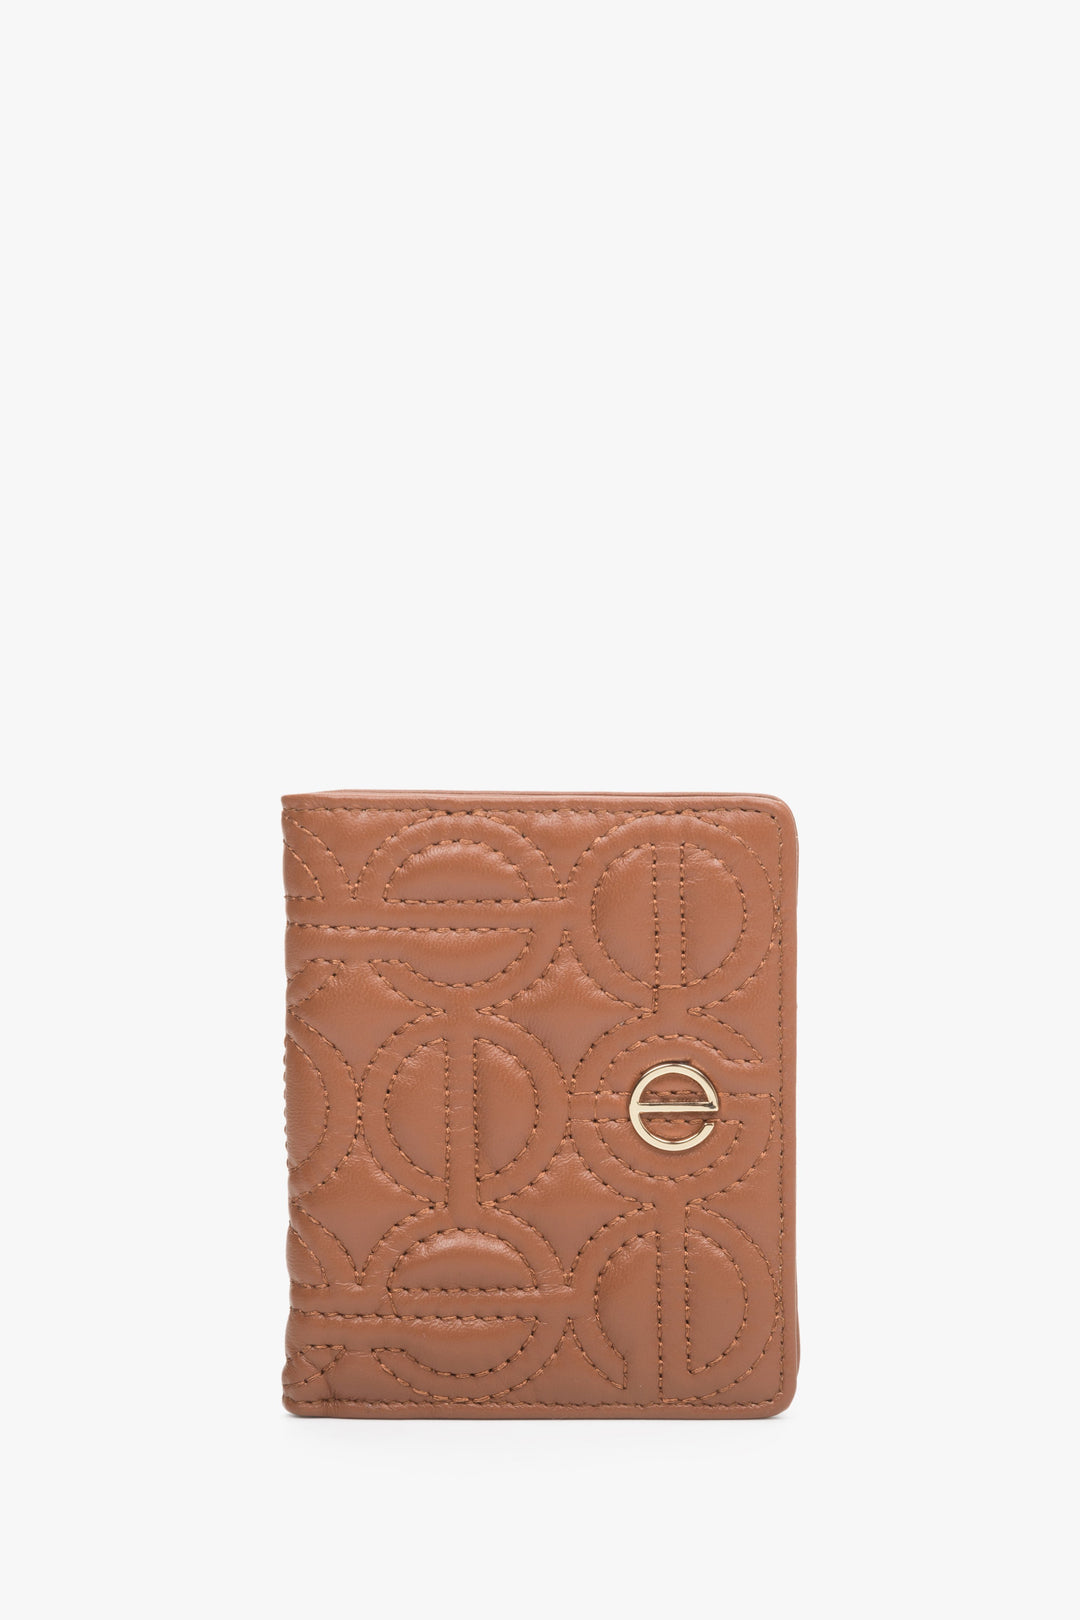 Mały skórzany portfel damski w kolorze brązowym ze złotymi okuciami Estro ER00113658